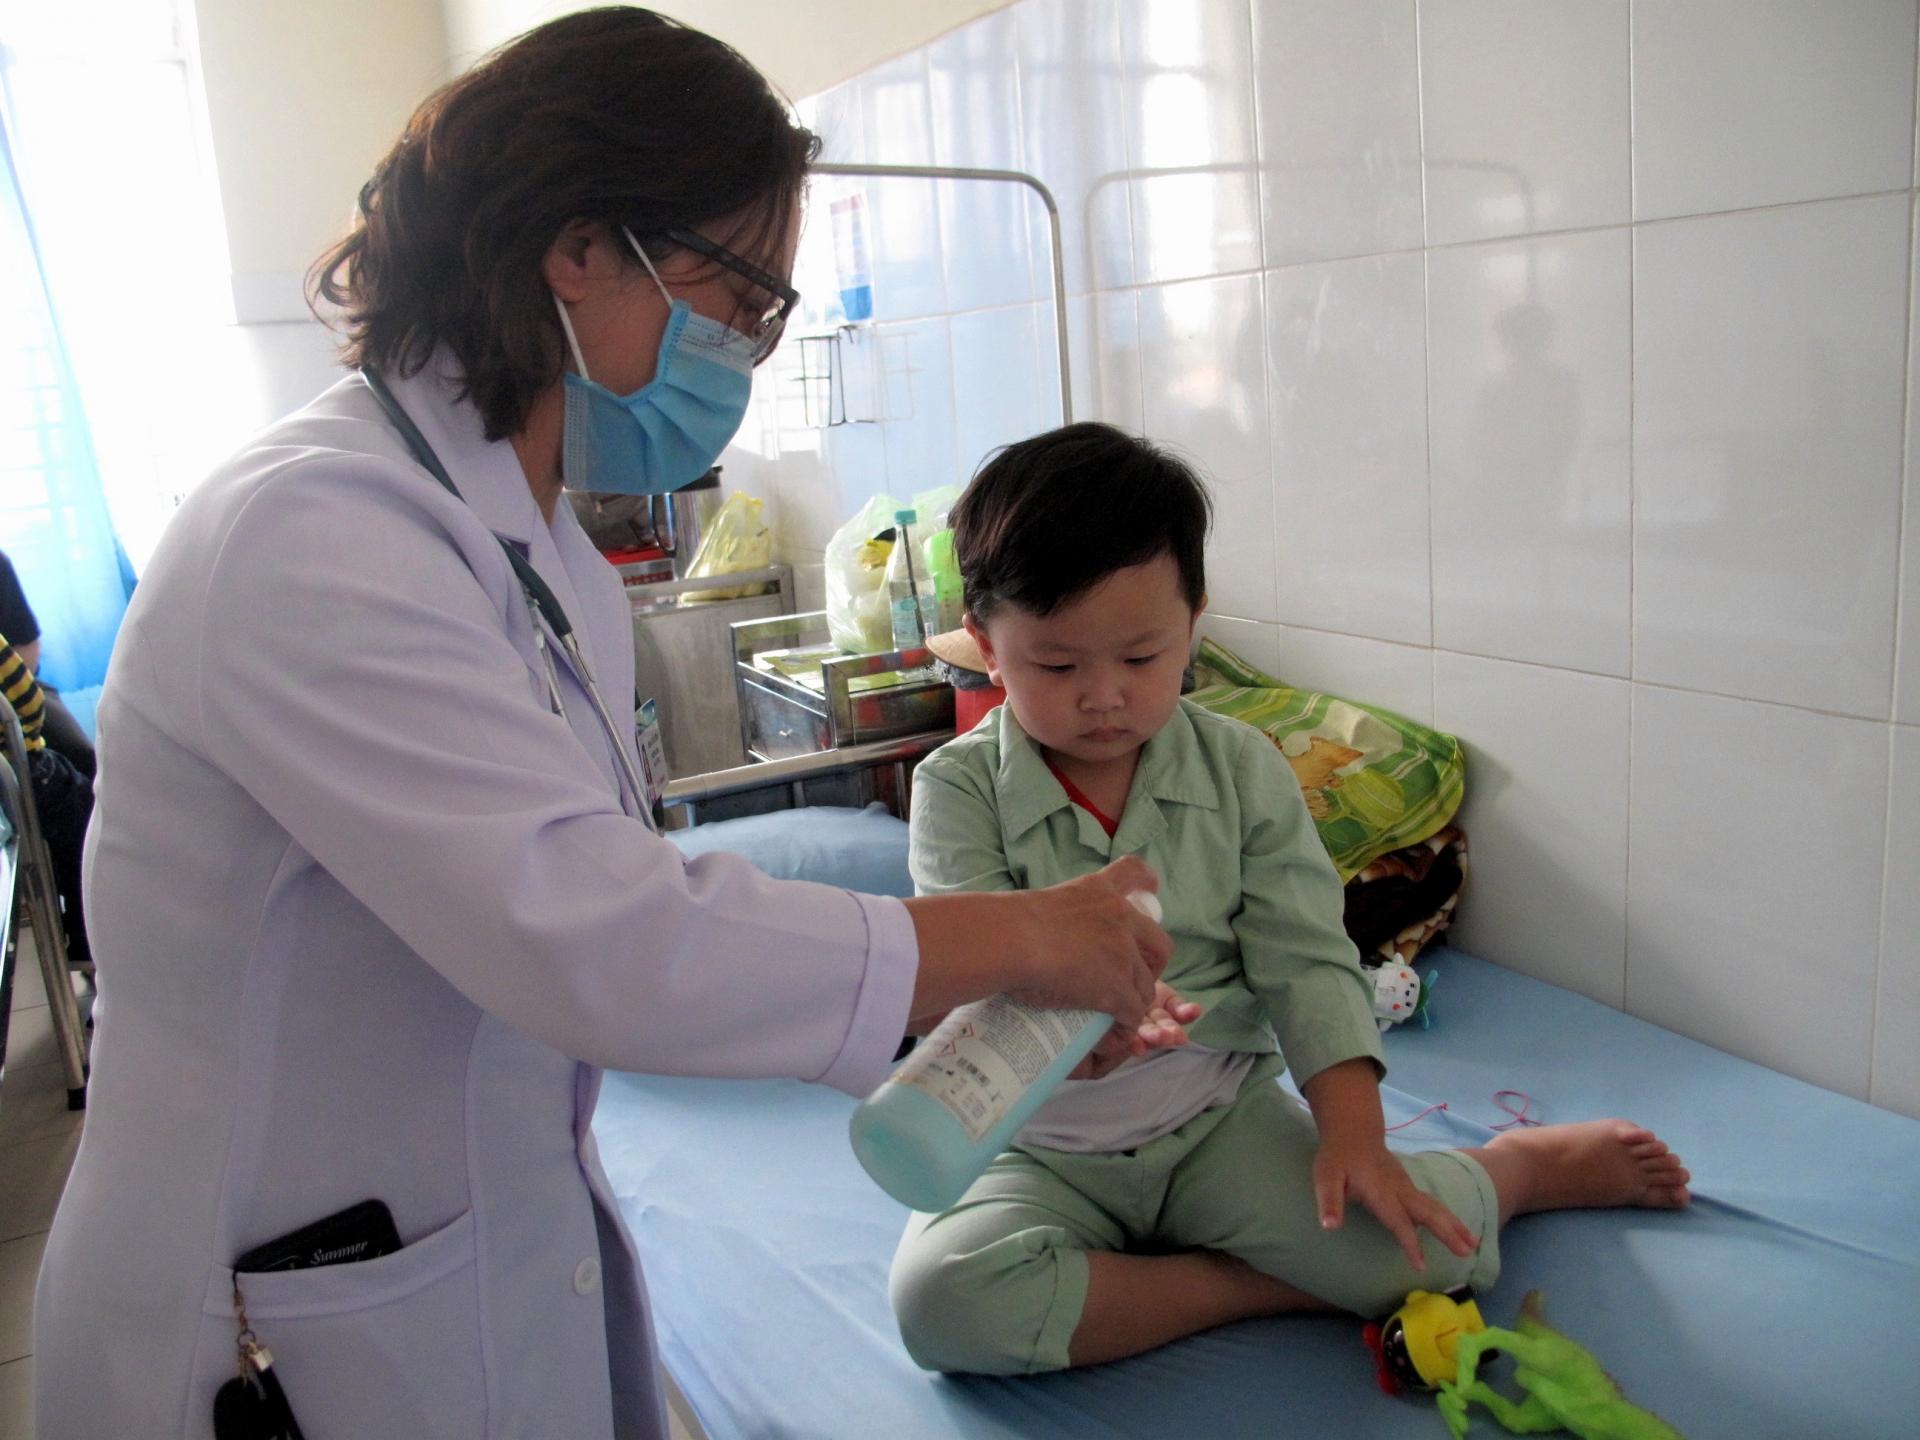 Bác sĩ Khoa Nhi Bệnh viện Đa khoa Lâm Đồng hướng dẫn bệnh nhi rửa tay sát khuẩn phòng bệnh tay chân miệng